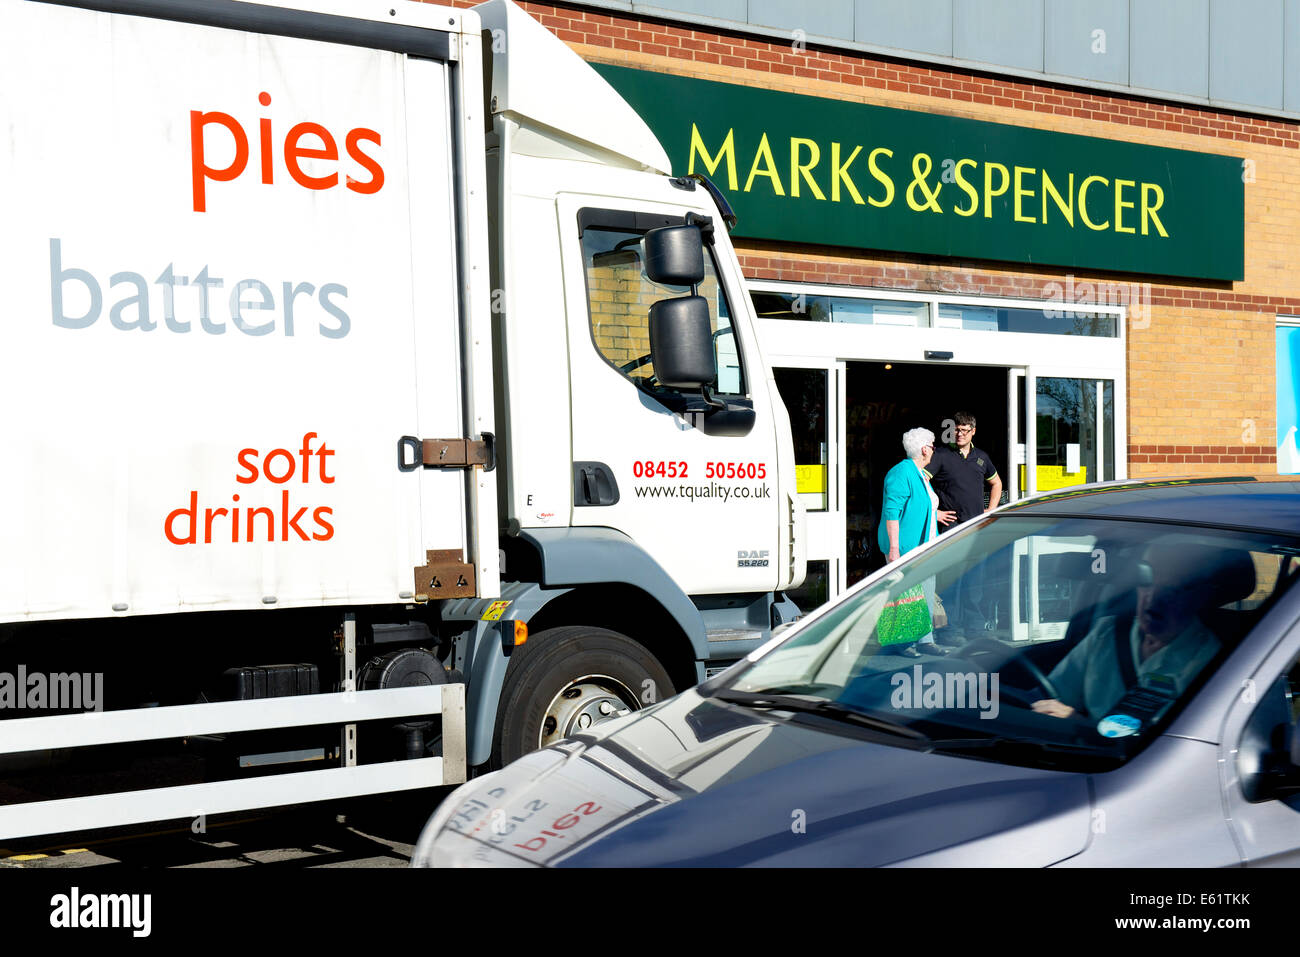 Lieferung an Marks & Spencer speichern, Workington, West Cumbria, England UK Stockfoto